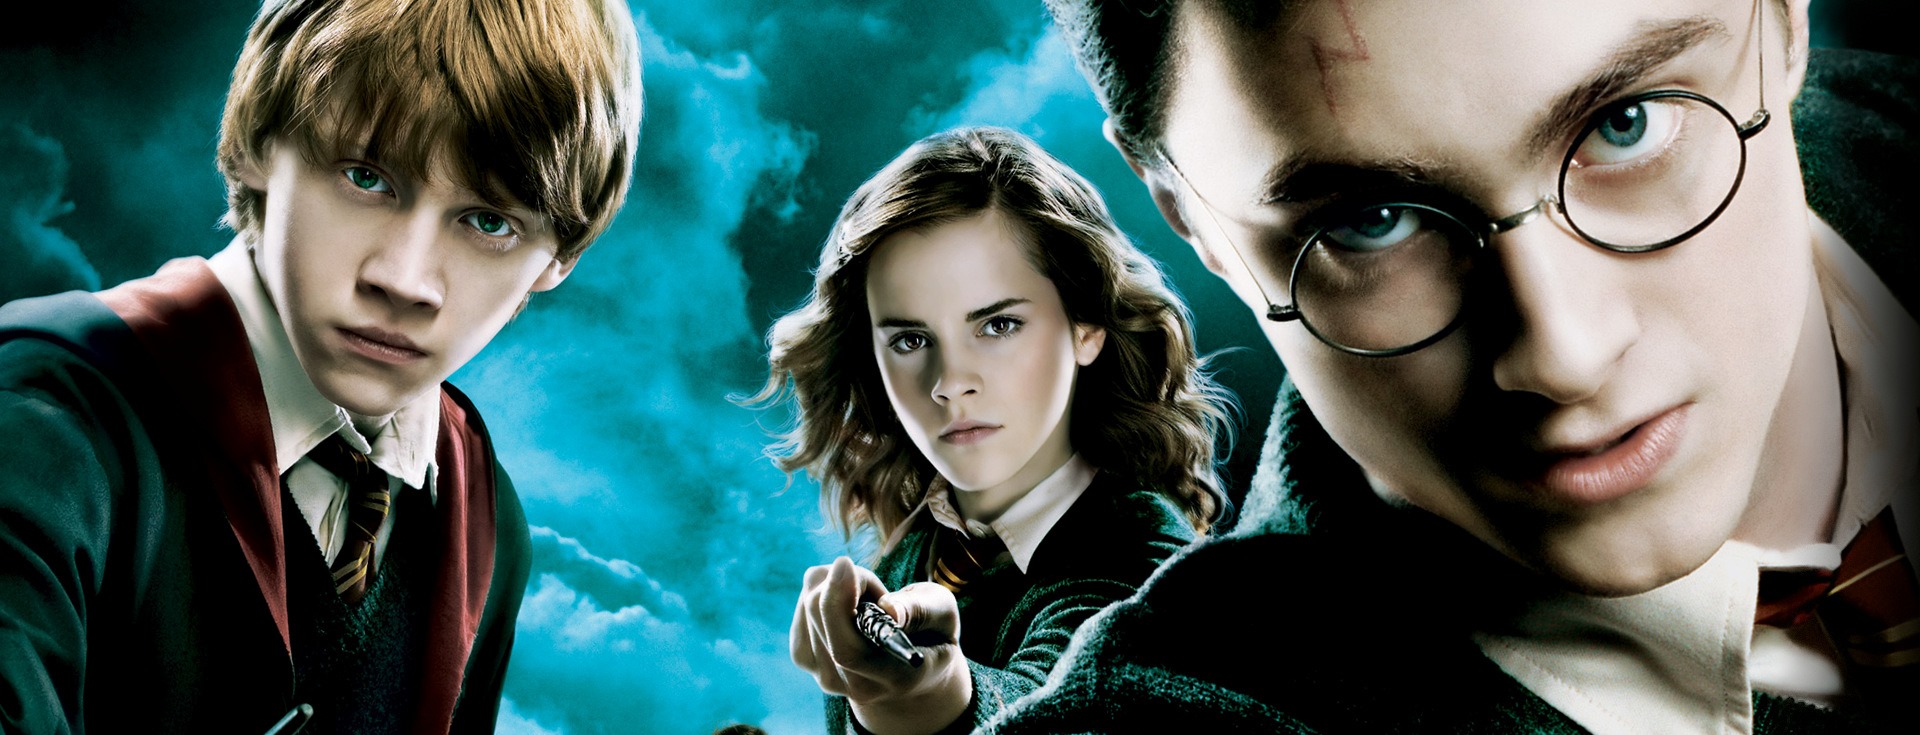 Harry Potter'dan Öğrenebileceğiniz 5 Hayat ve Kariyer Dersi